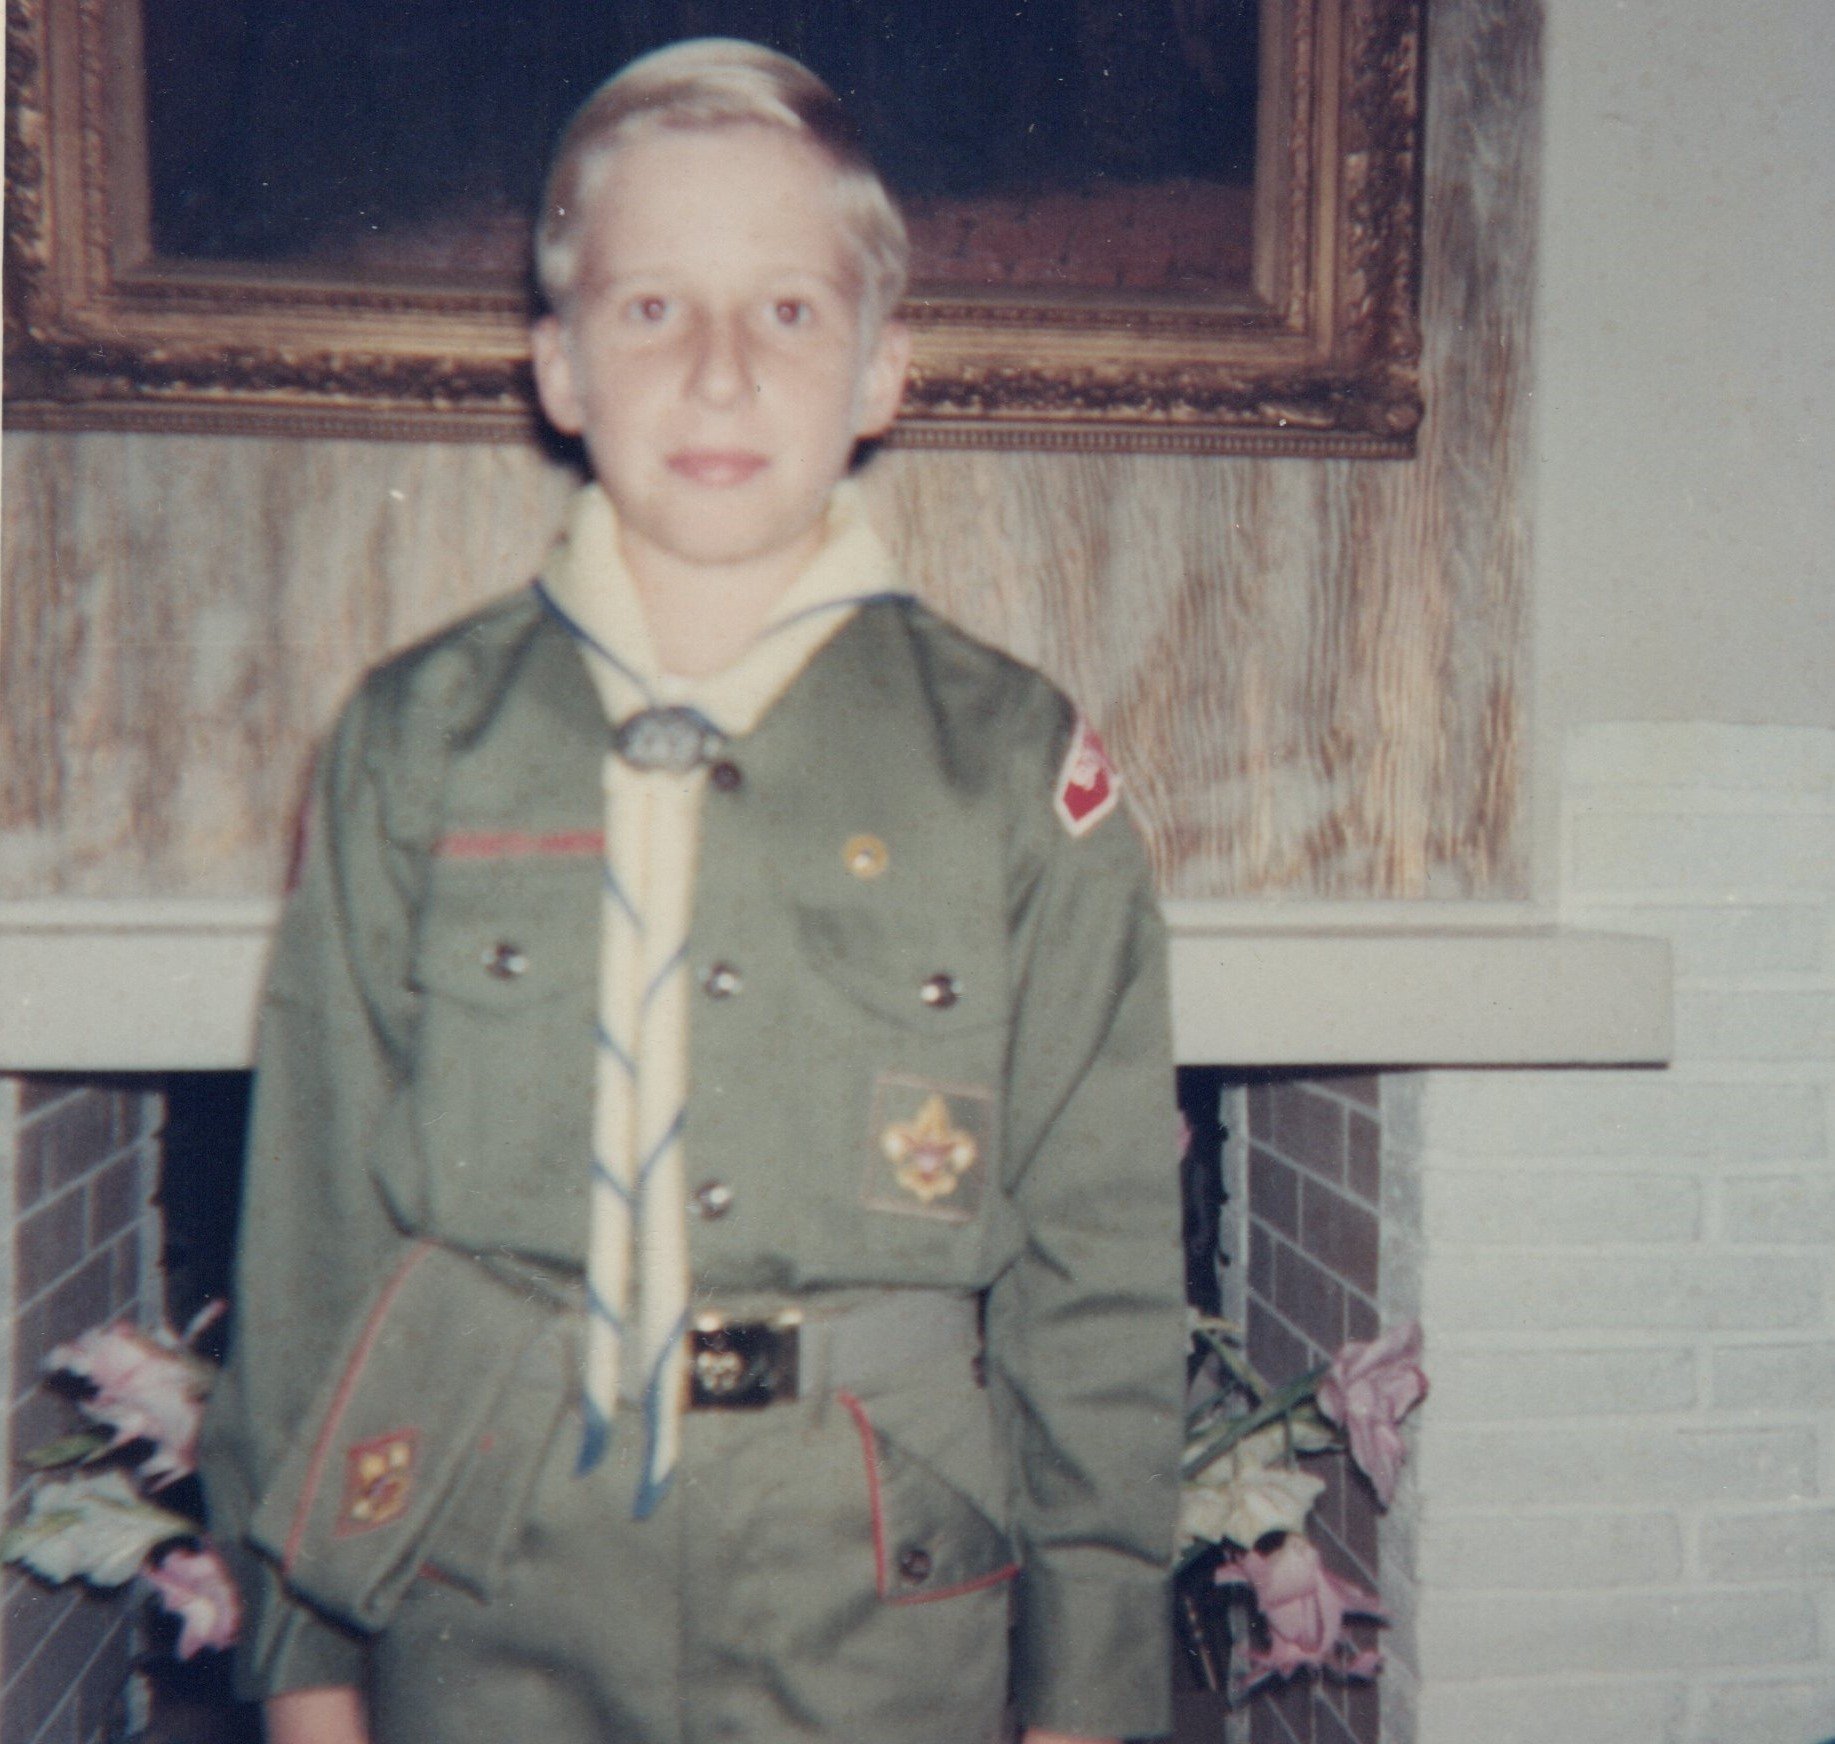 McCorristin as a Boy Scout.